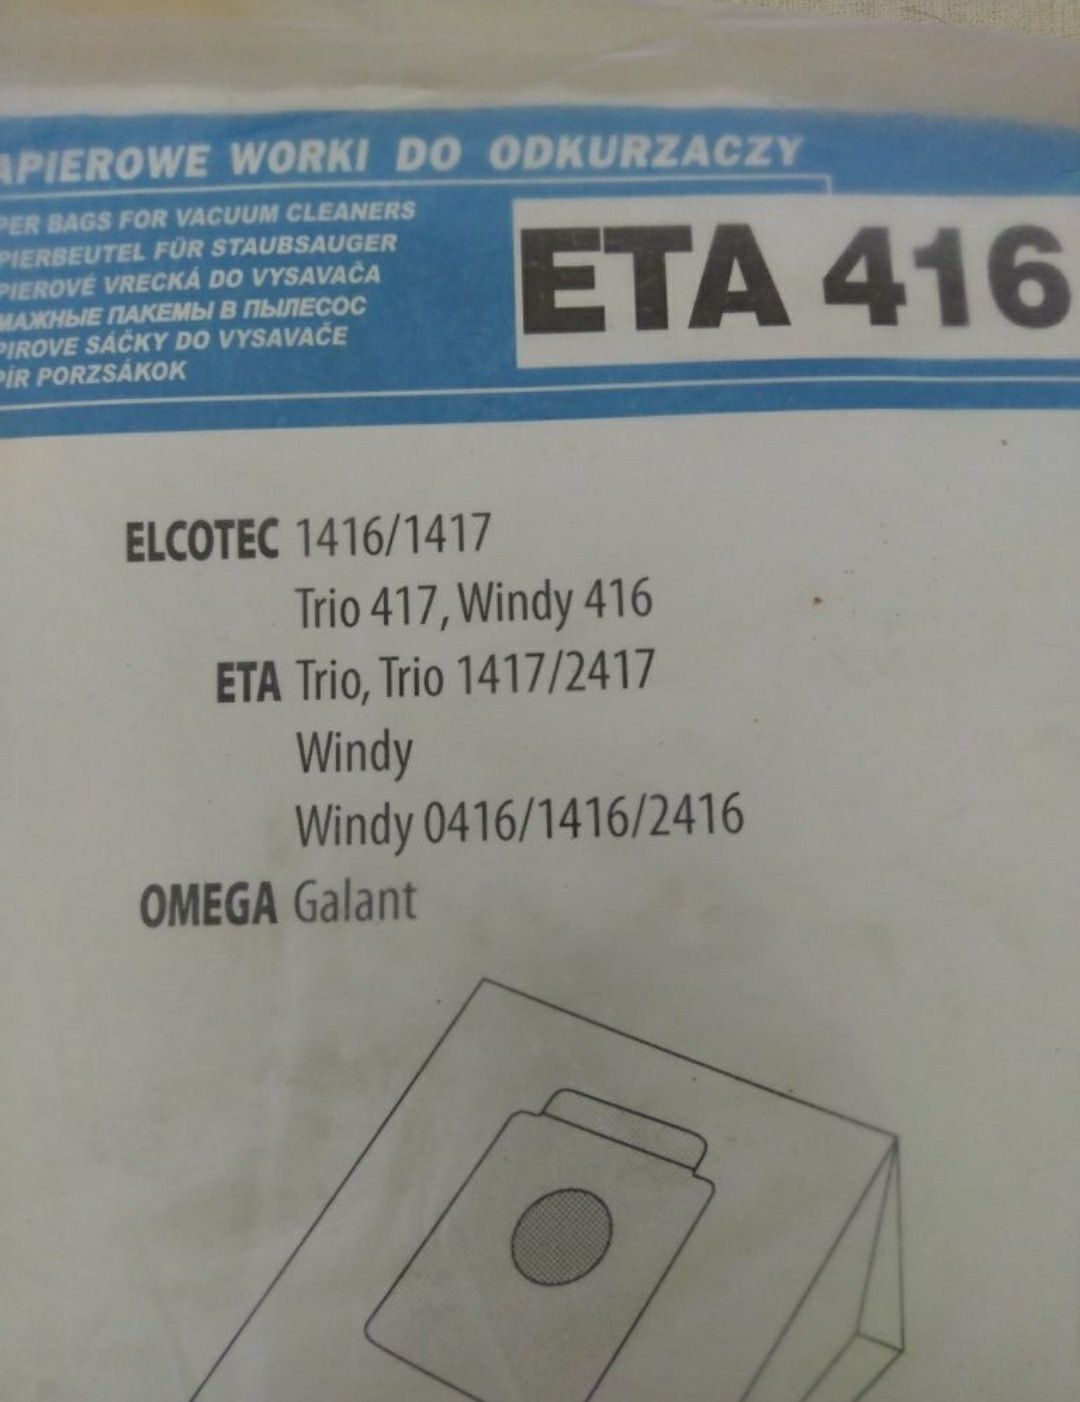 Worki papierowe do odkurzacza ETA 416 Trio Windy Omega Galant 14 szt